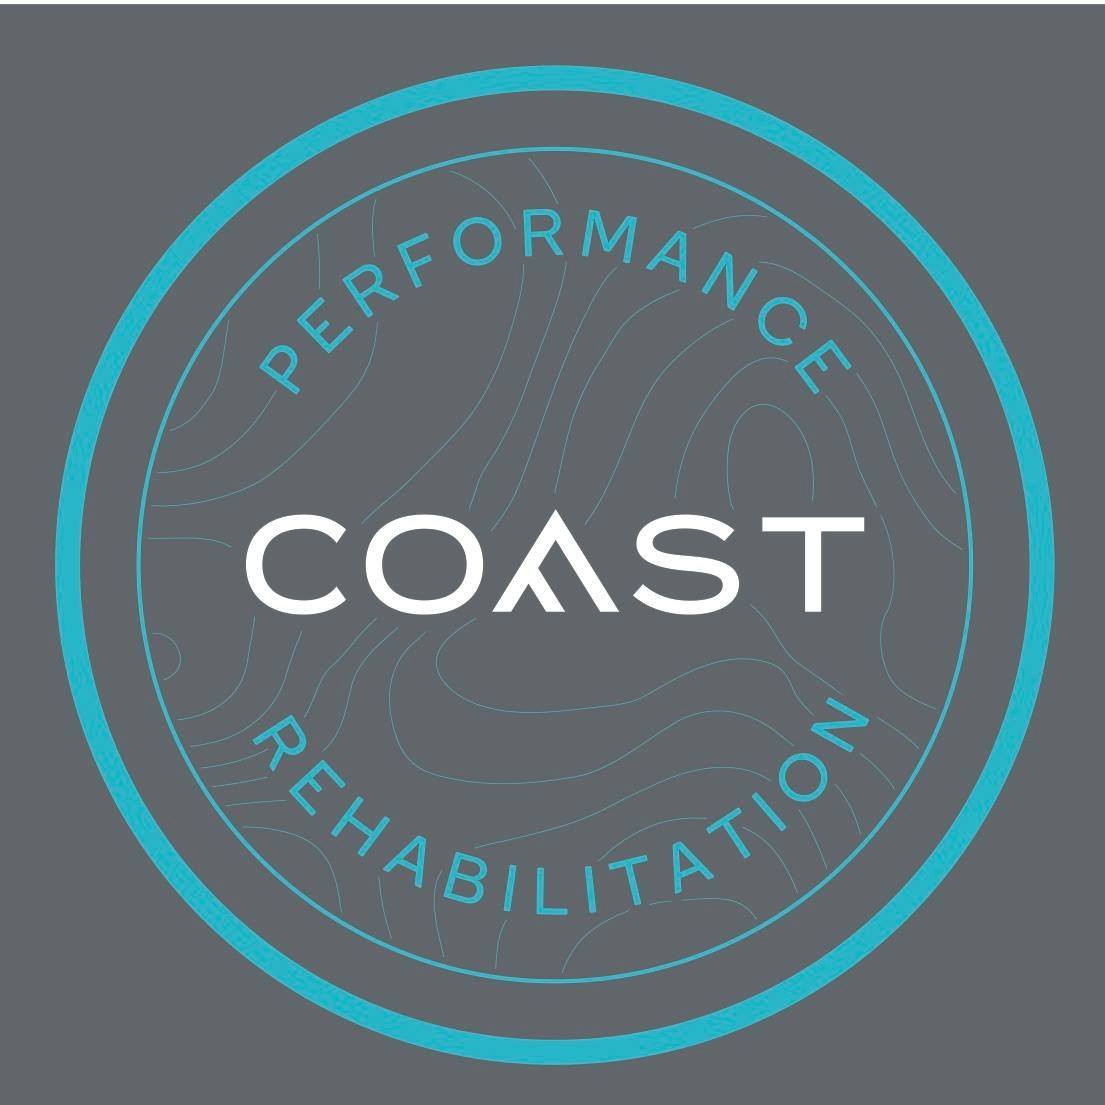 Coast Performance Rehab